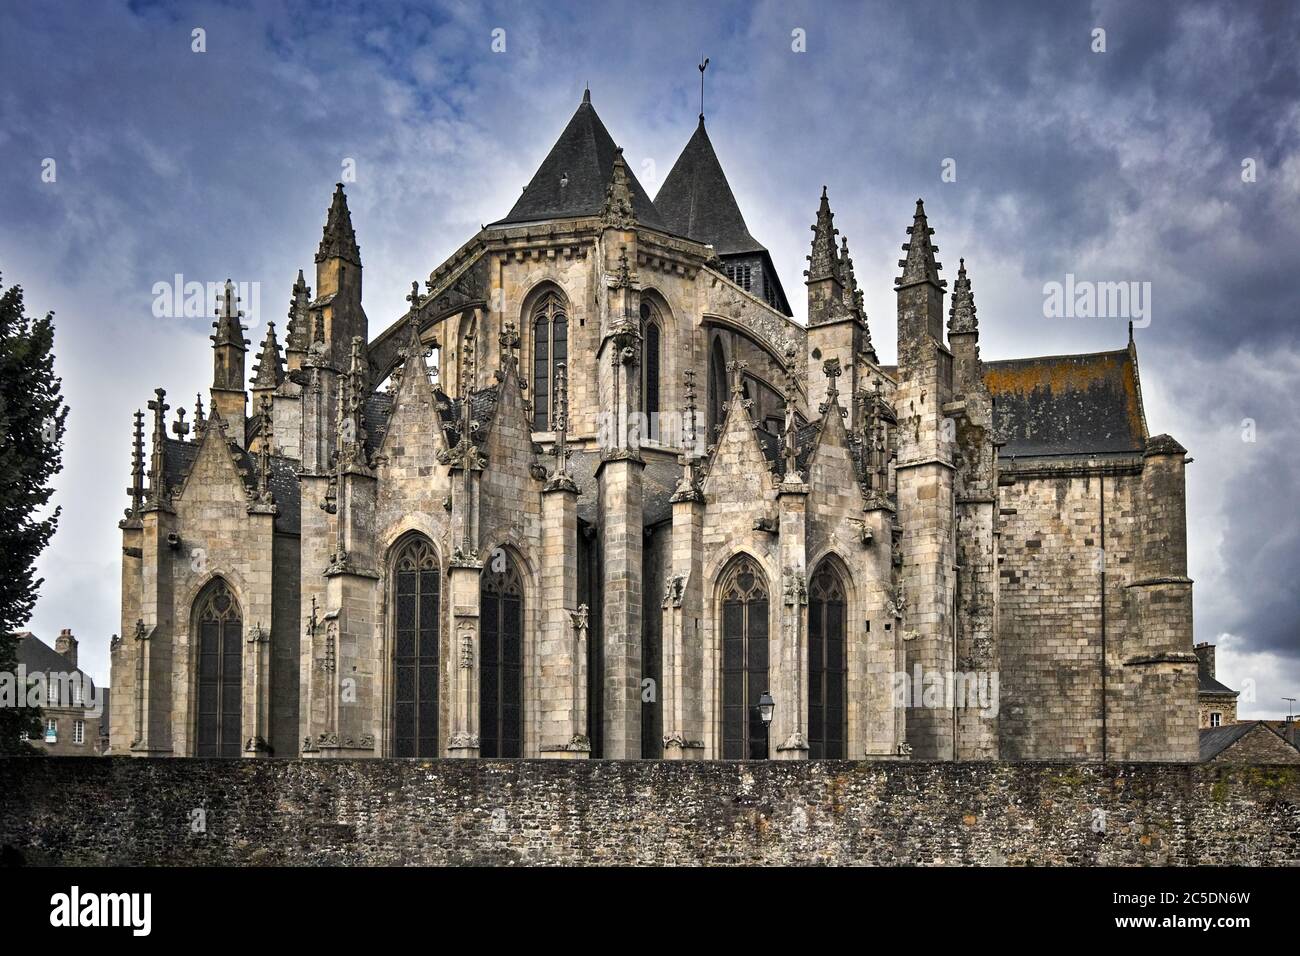 Kirche Saint Malo, Dinan, Bretagne, Frankreich, Europa. Es ist ein schönes Beispiel für spätextravagante gotische Architektur mit eleganten gewundenen Linien. Stockfoto